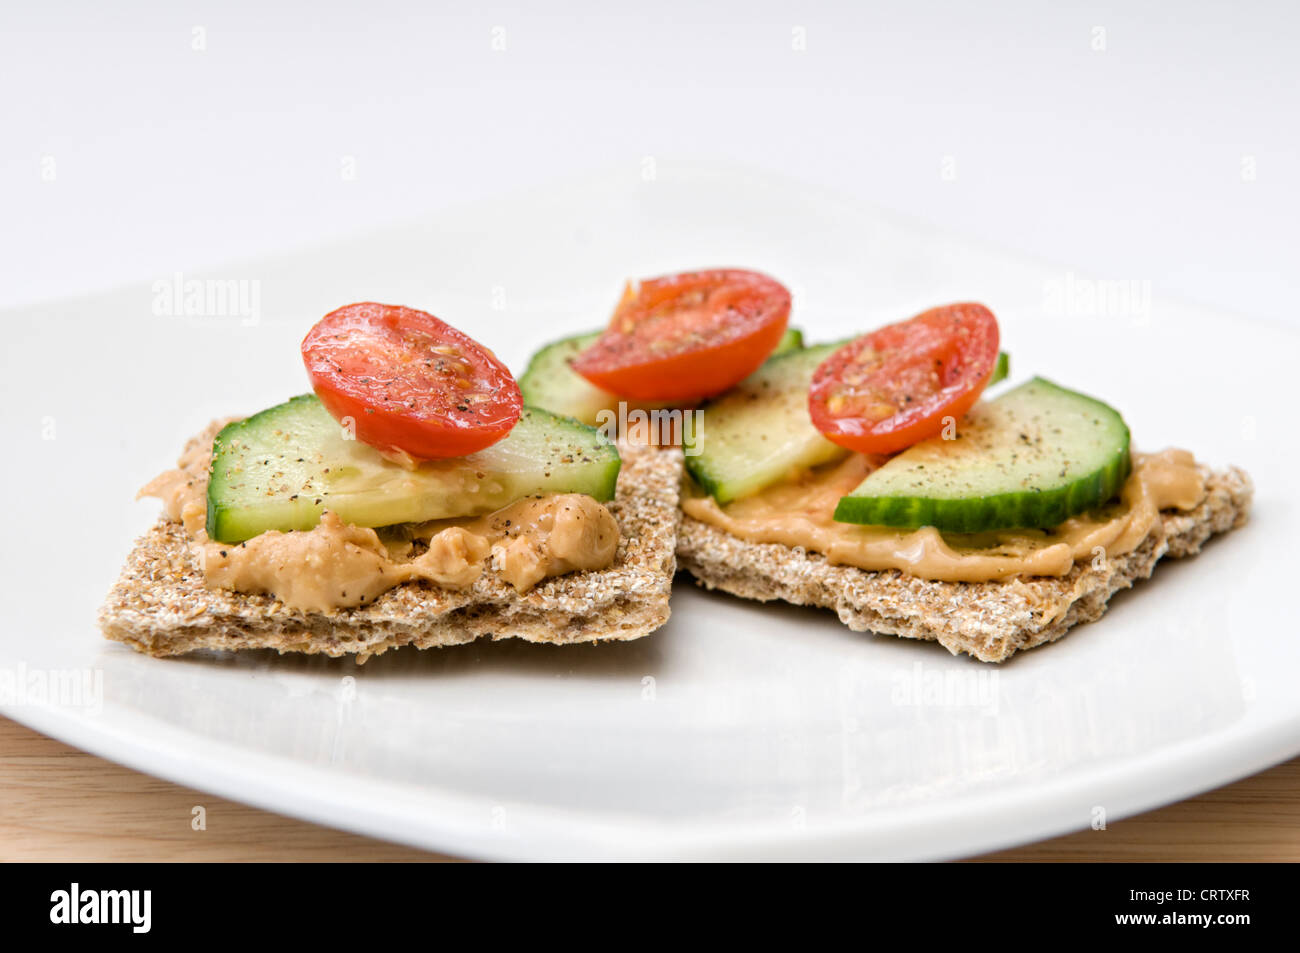 Knusprige Brot mit Erdnussbutter, in Scheiben geschnittenen Gurken und Tomaten auf weißen Teller mit Gewürzen obenauf Stockfoto